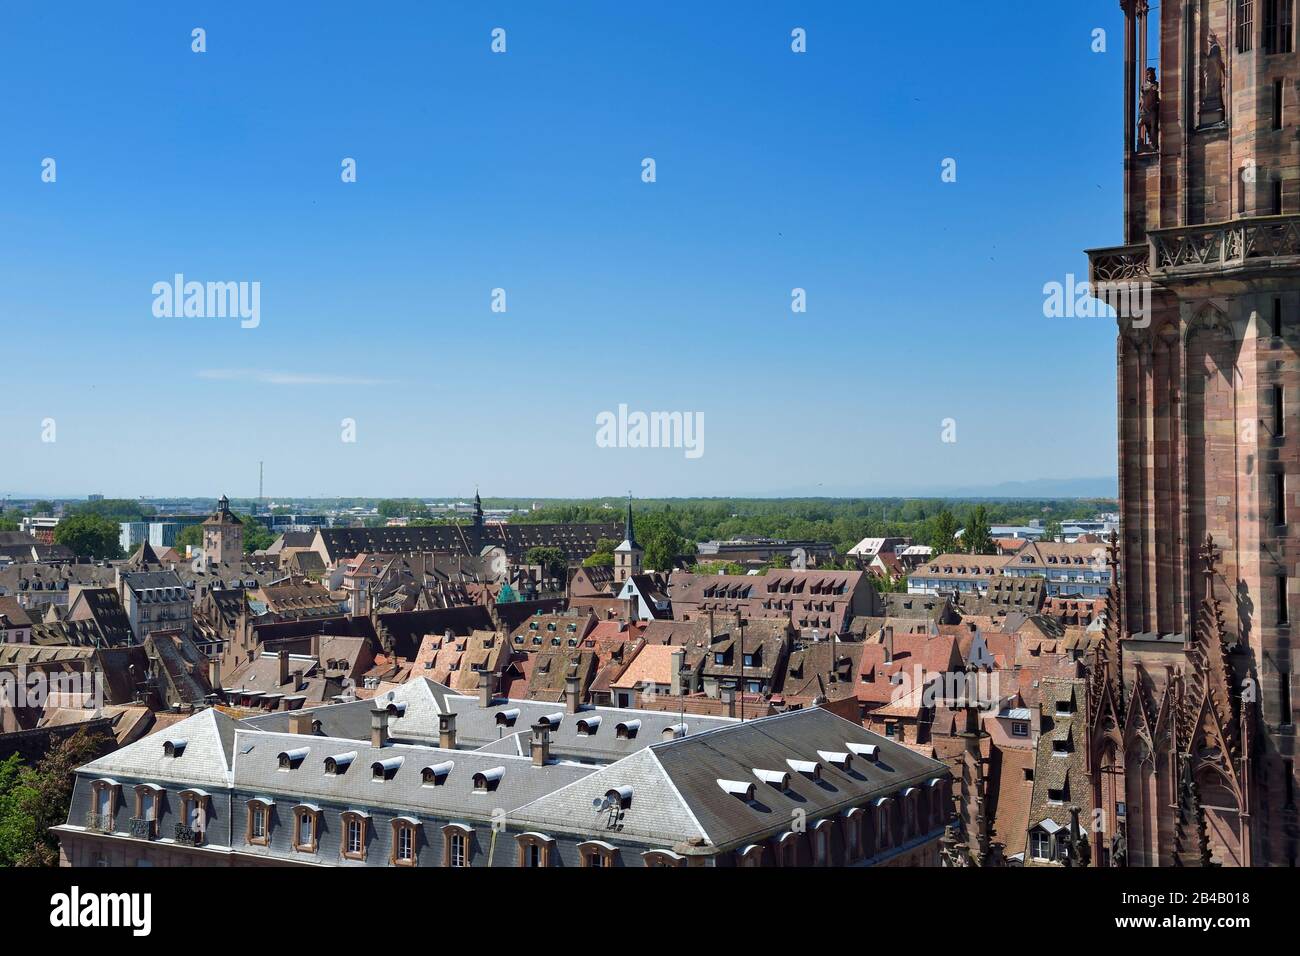 Frankreich, Bas Rhin, Straßburg, Altstadt, die von der UNESCO zum Weltkulturerbe erklärt wurde, Kathedrale Notre Dame, Blick auf das mittelalterliche Bürgerspital und Reiterstandbild eines Königs auf dem Südturm Stockfoto